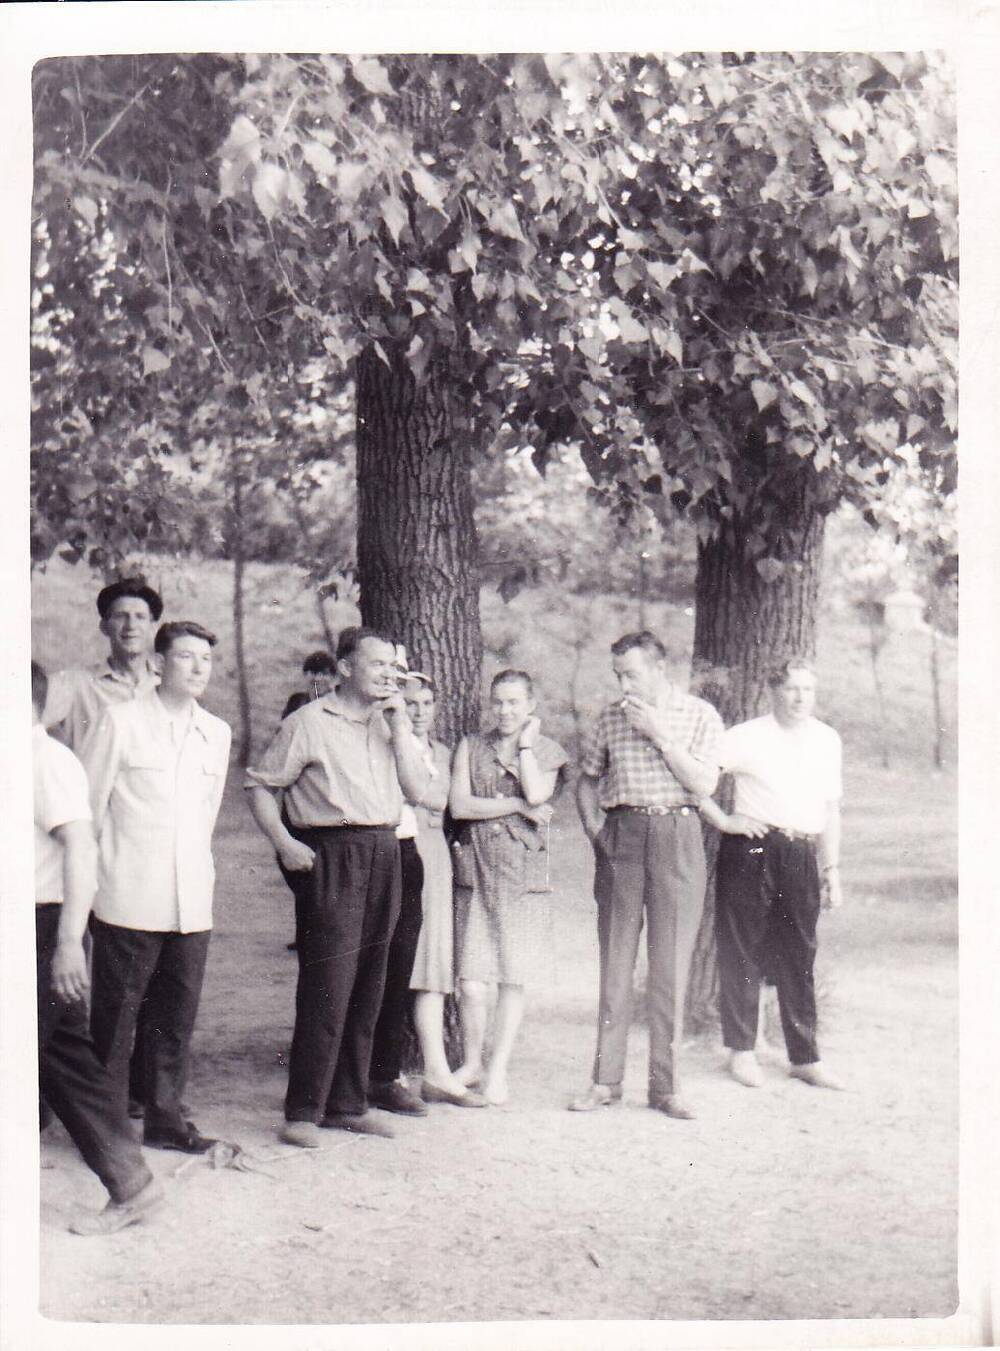 Фотография черно-белая. Сюжетная. Женщины и мужчины стоят под деревьями.